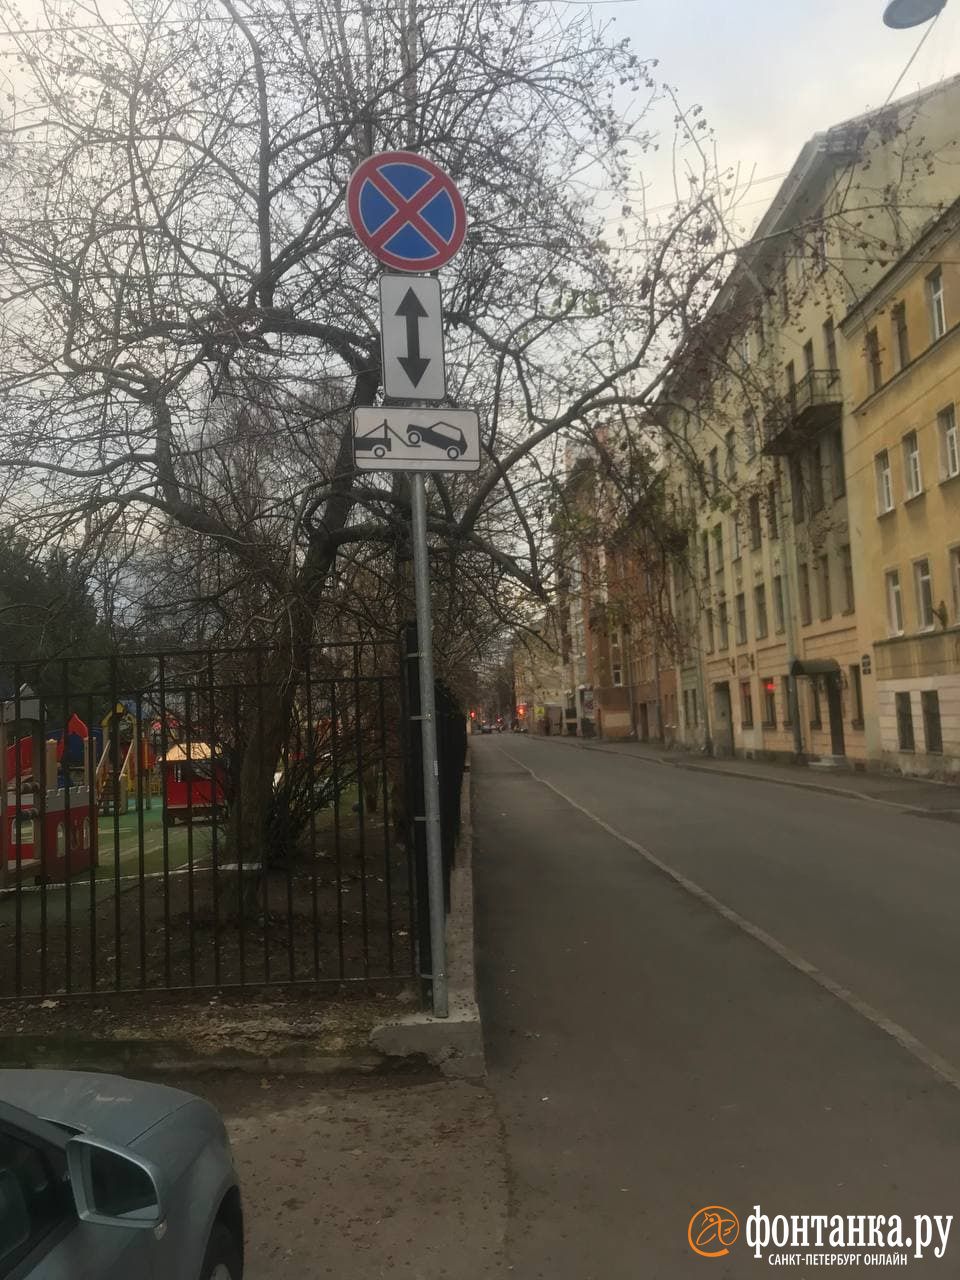 Новый знак с левой стороны улицы и пустая проезжая часть